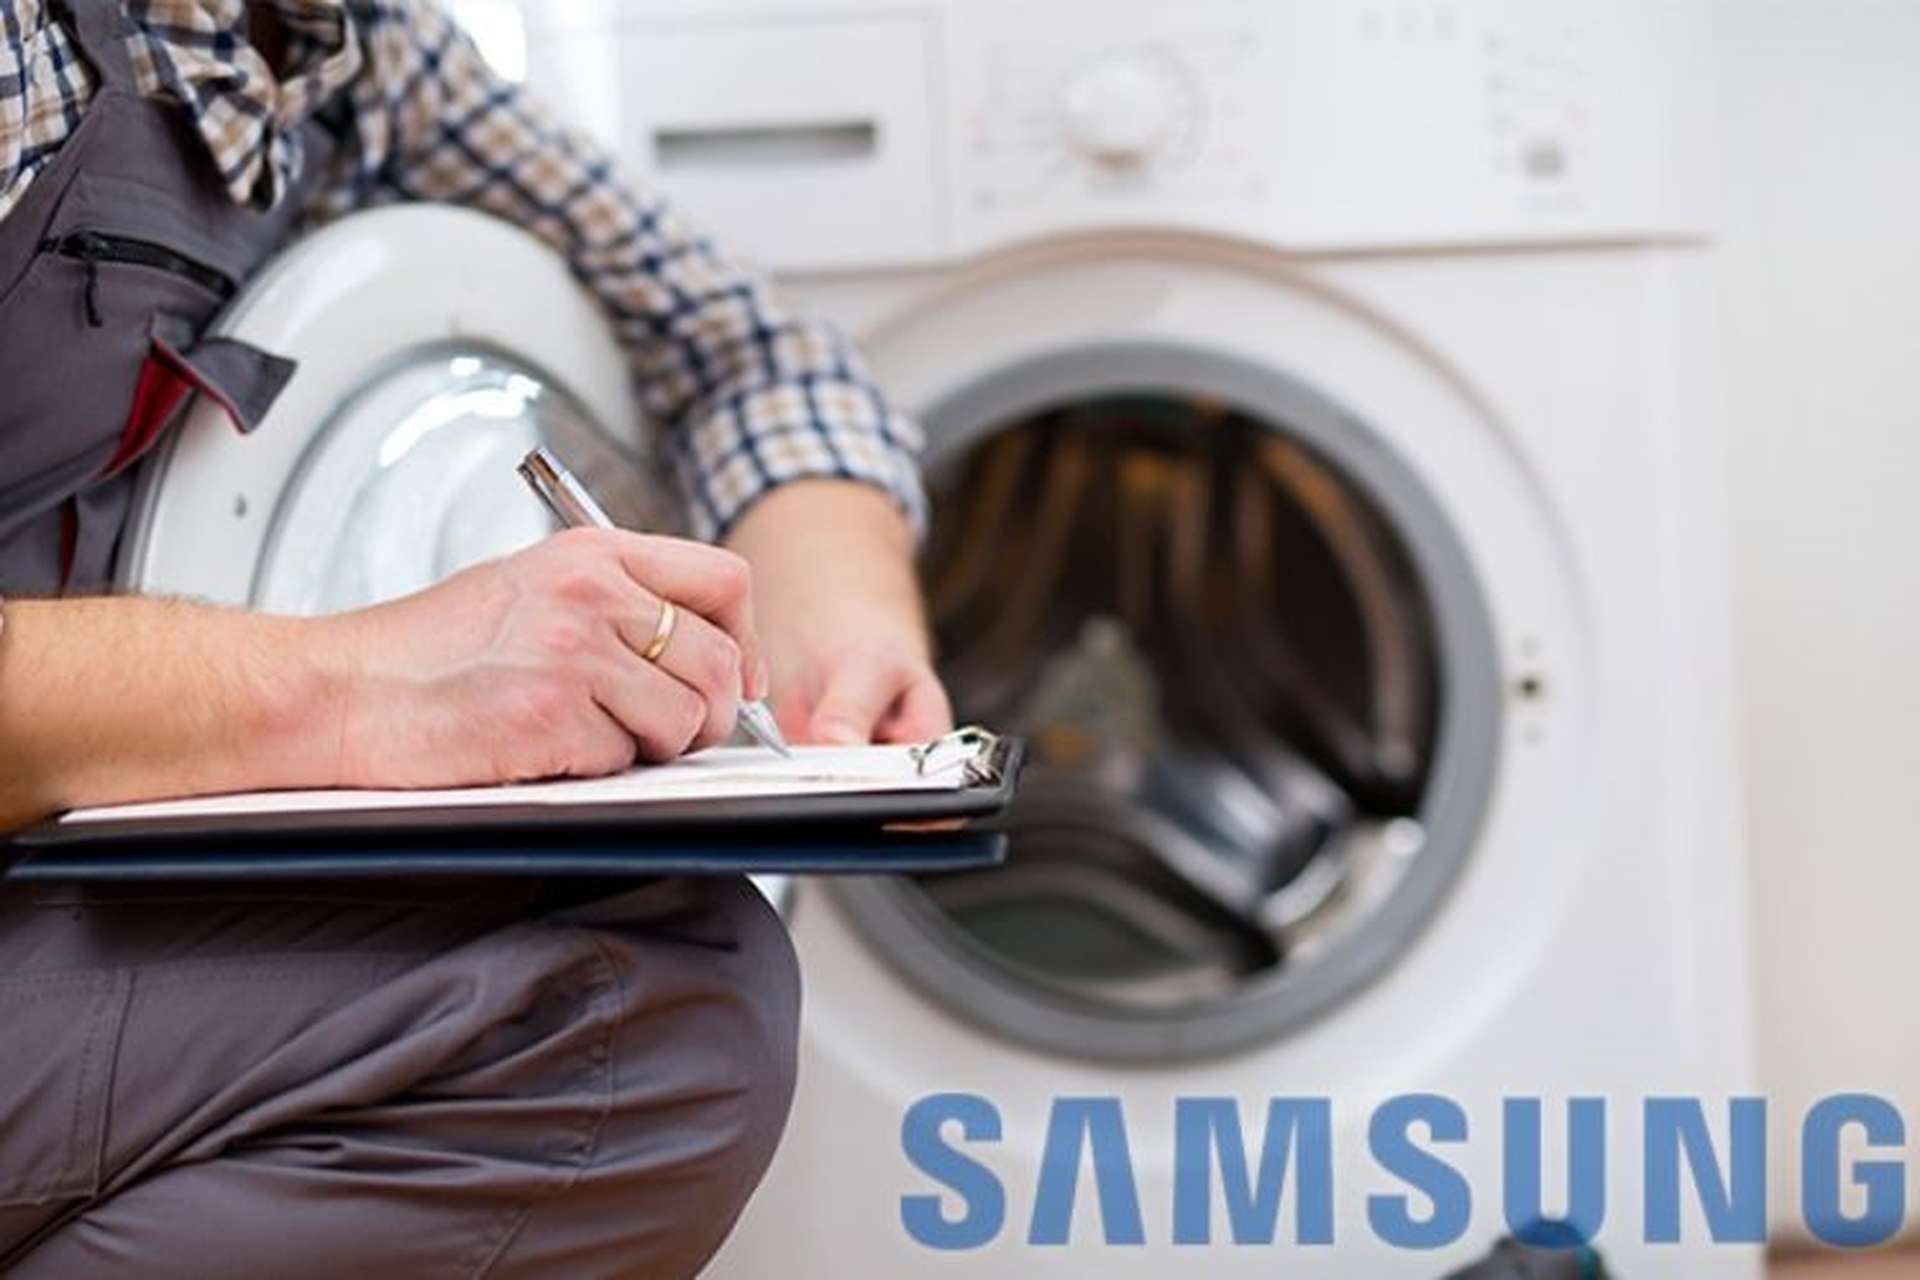 Bảo hành máy giặt Samsung: Thời gian, cách kiểm tra, cách yêu cầu sửa chữa, chính sách 